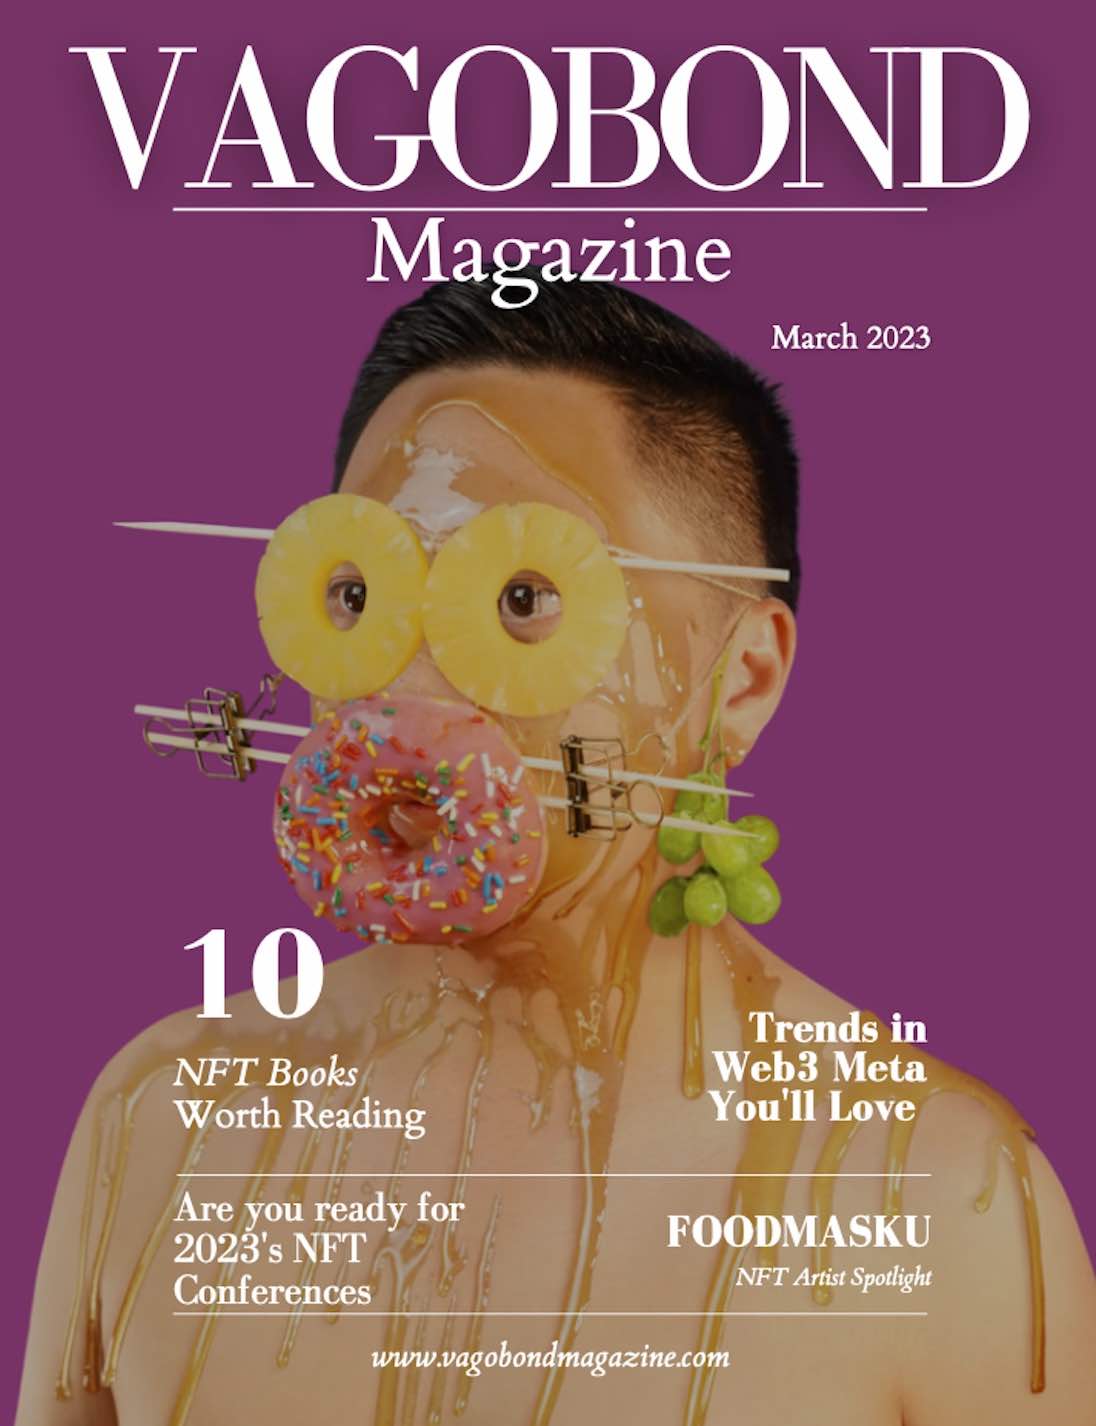 Vagobond Magazine: March 2023 : Volume 2, Issue 3